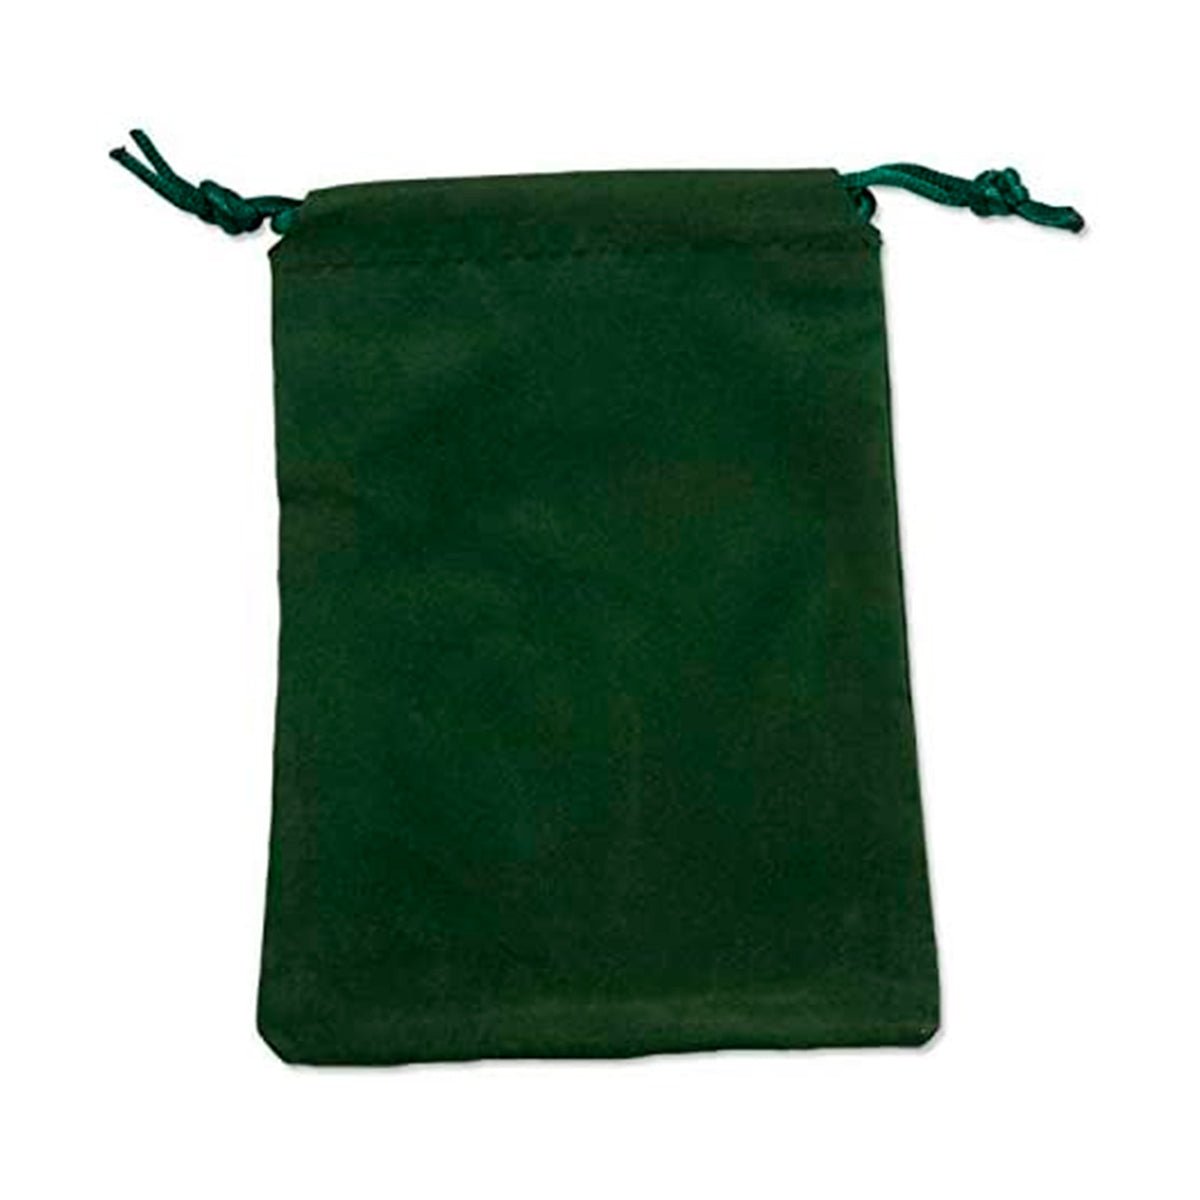 Green Velvet Bag 4x6 inches - 13 Moons